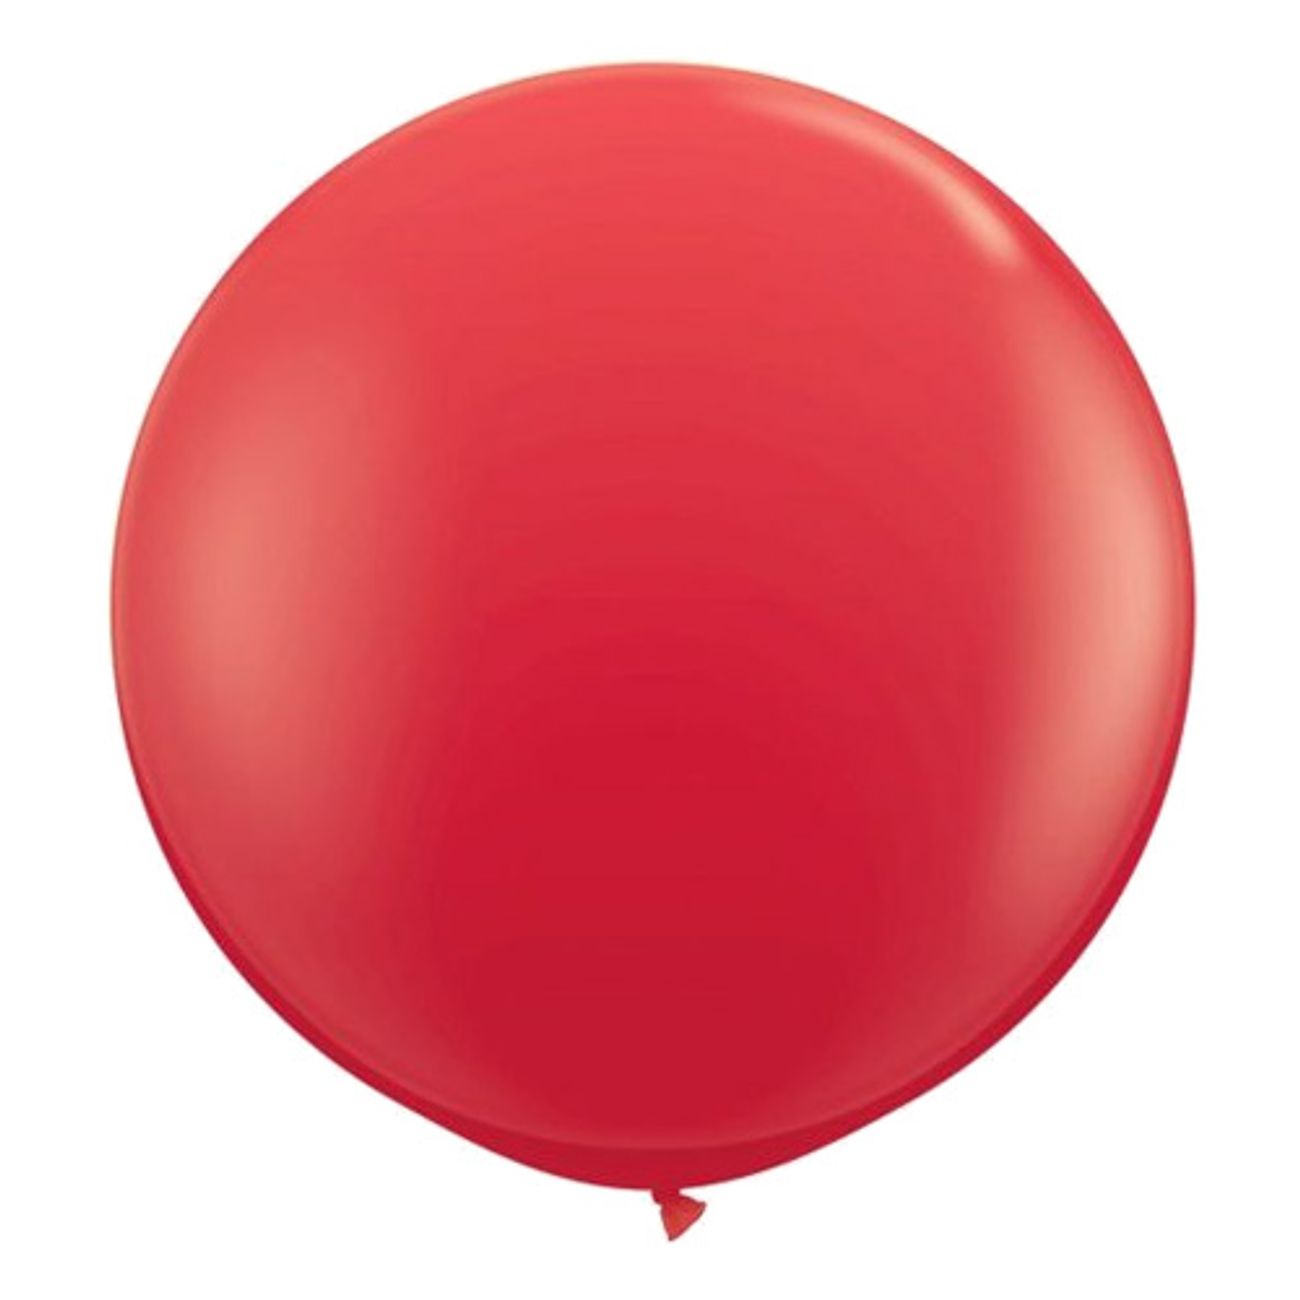 jatteballong-rod-1